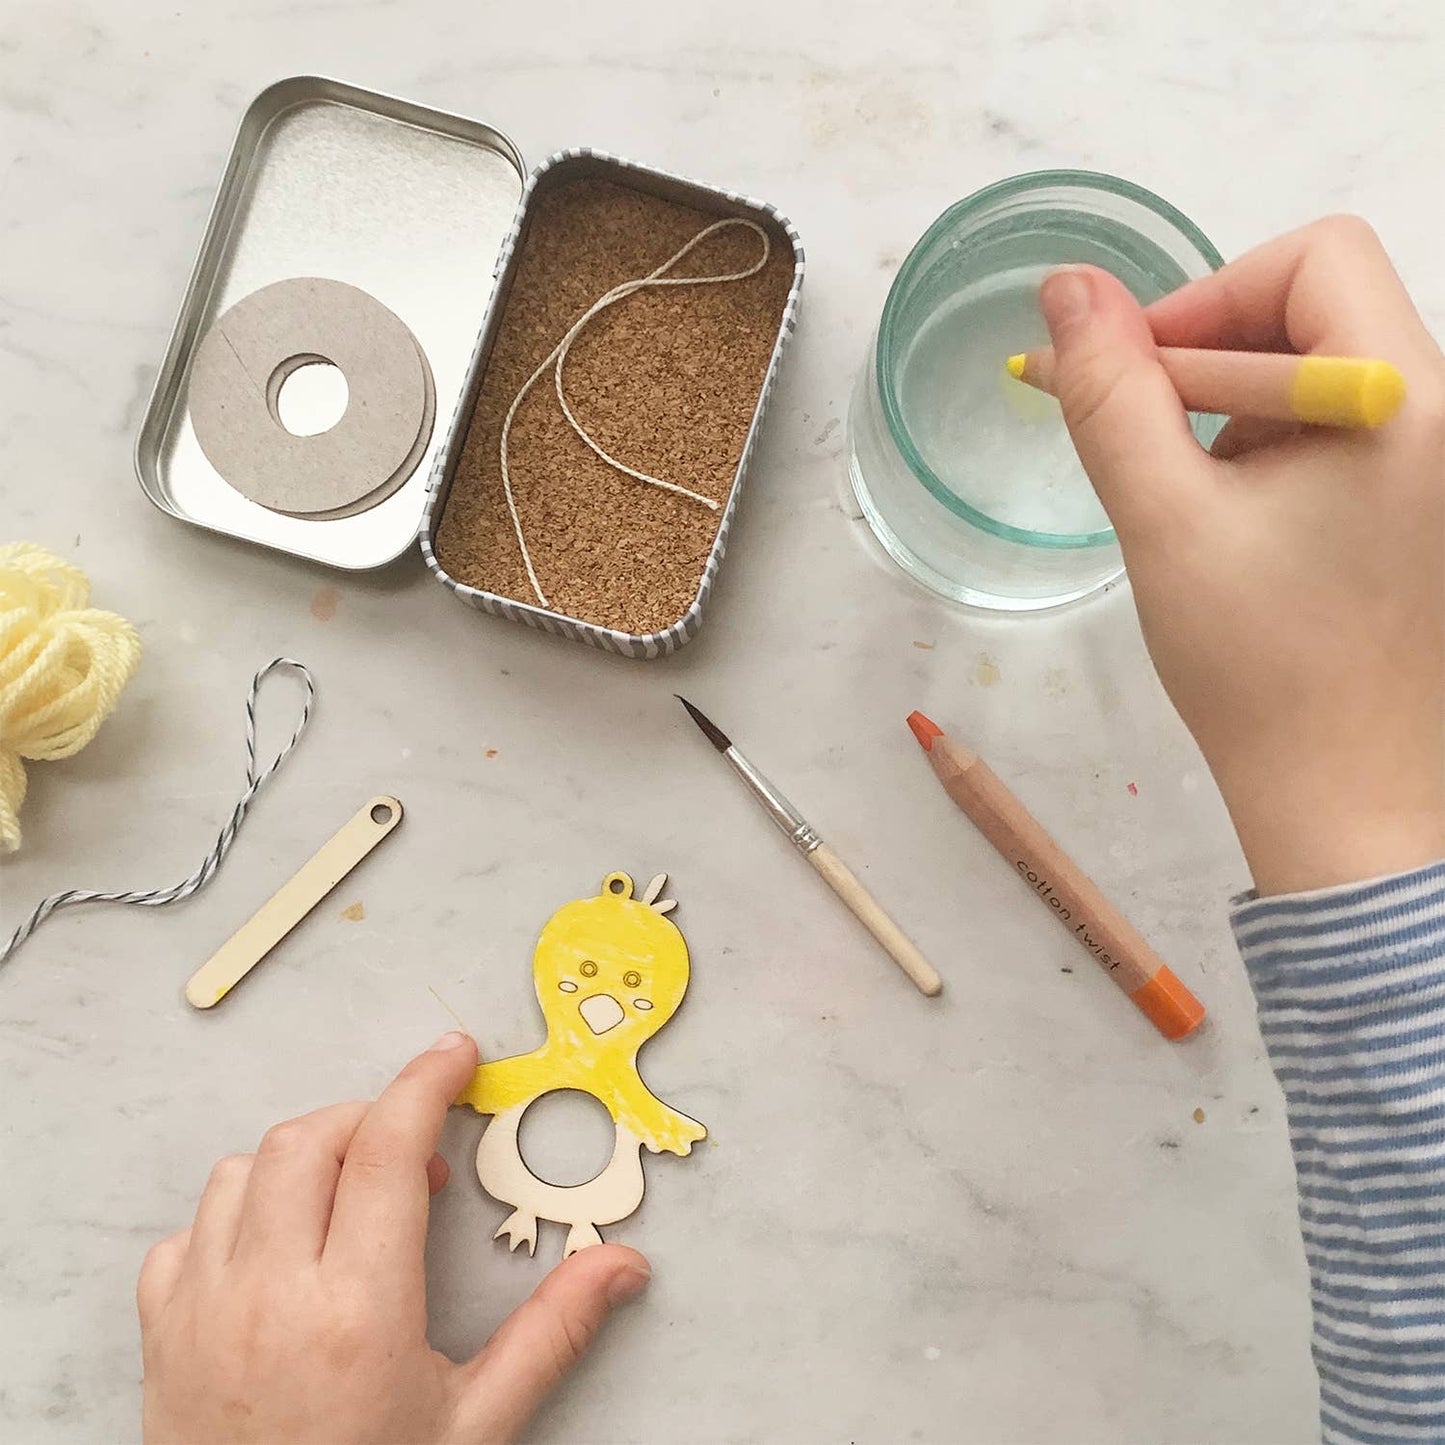 Make Your Own Pom Pom Chick Gift Kit